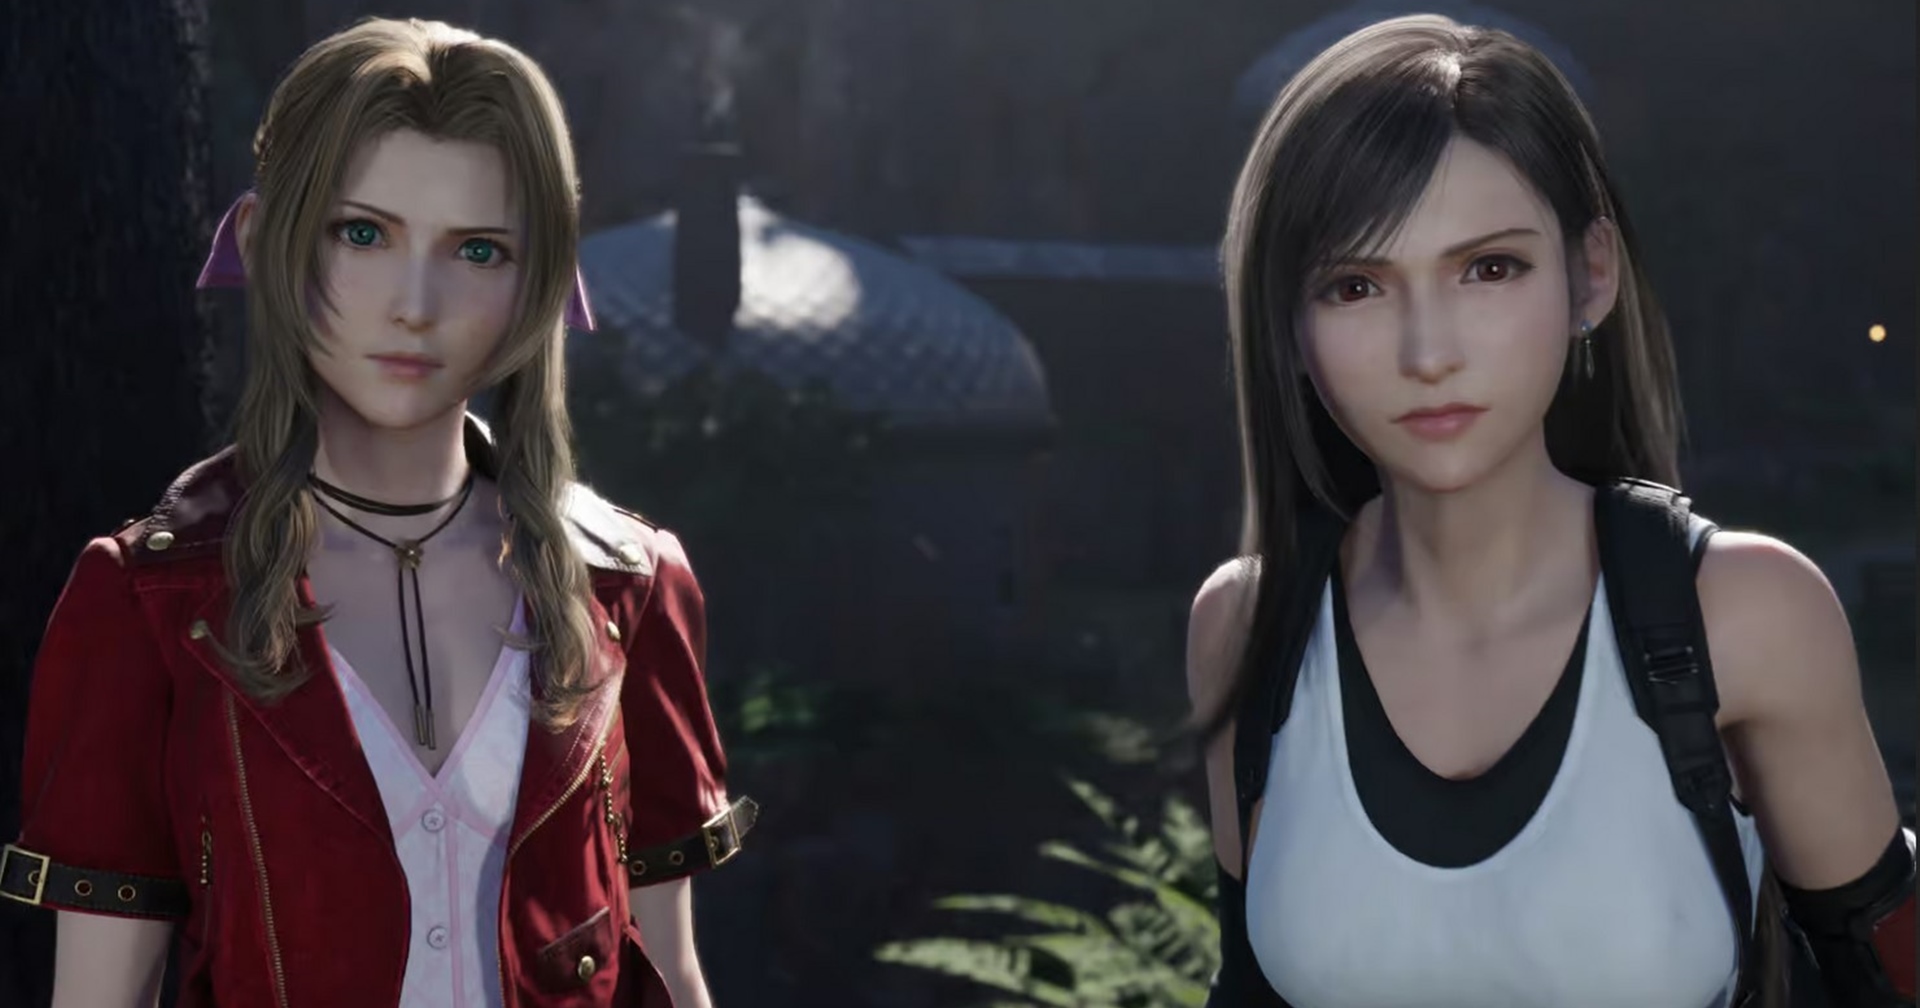 ผู้สร้าง ‘Final Fantasy 7’ ปรับบทให้ Aerith และ Tifa มีความสัมพันธ์ที่ดีขึ้นในฉบับสร้างใหม่